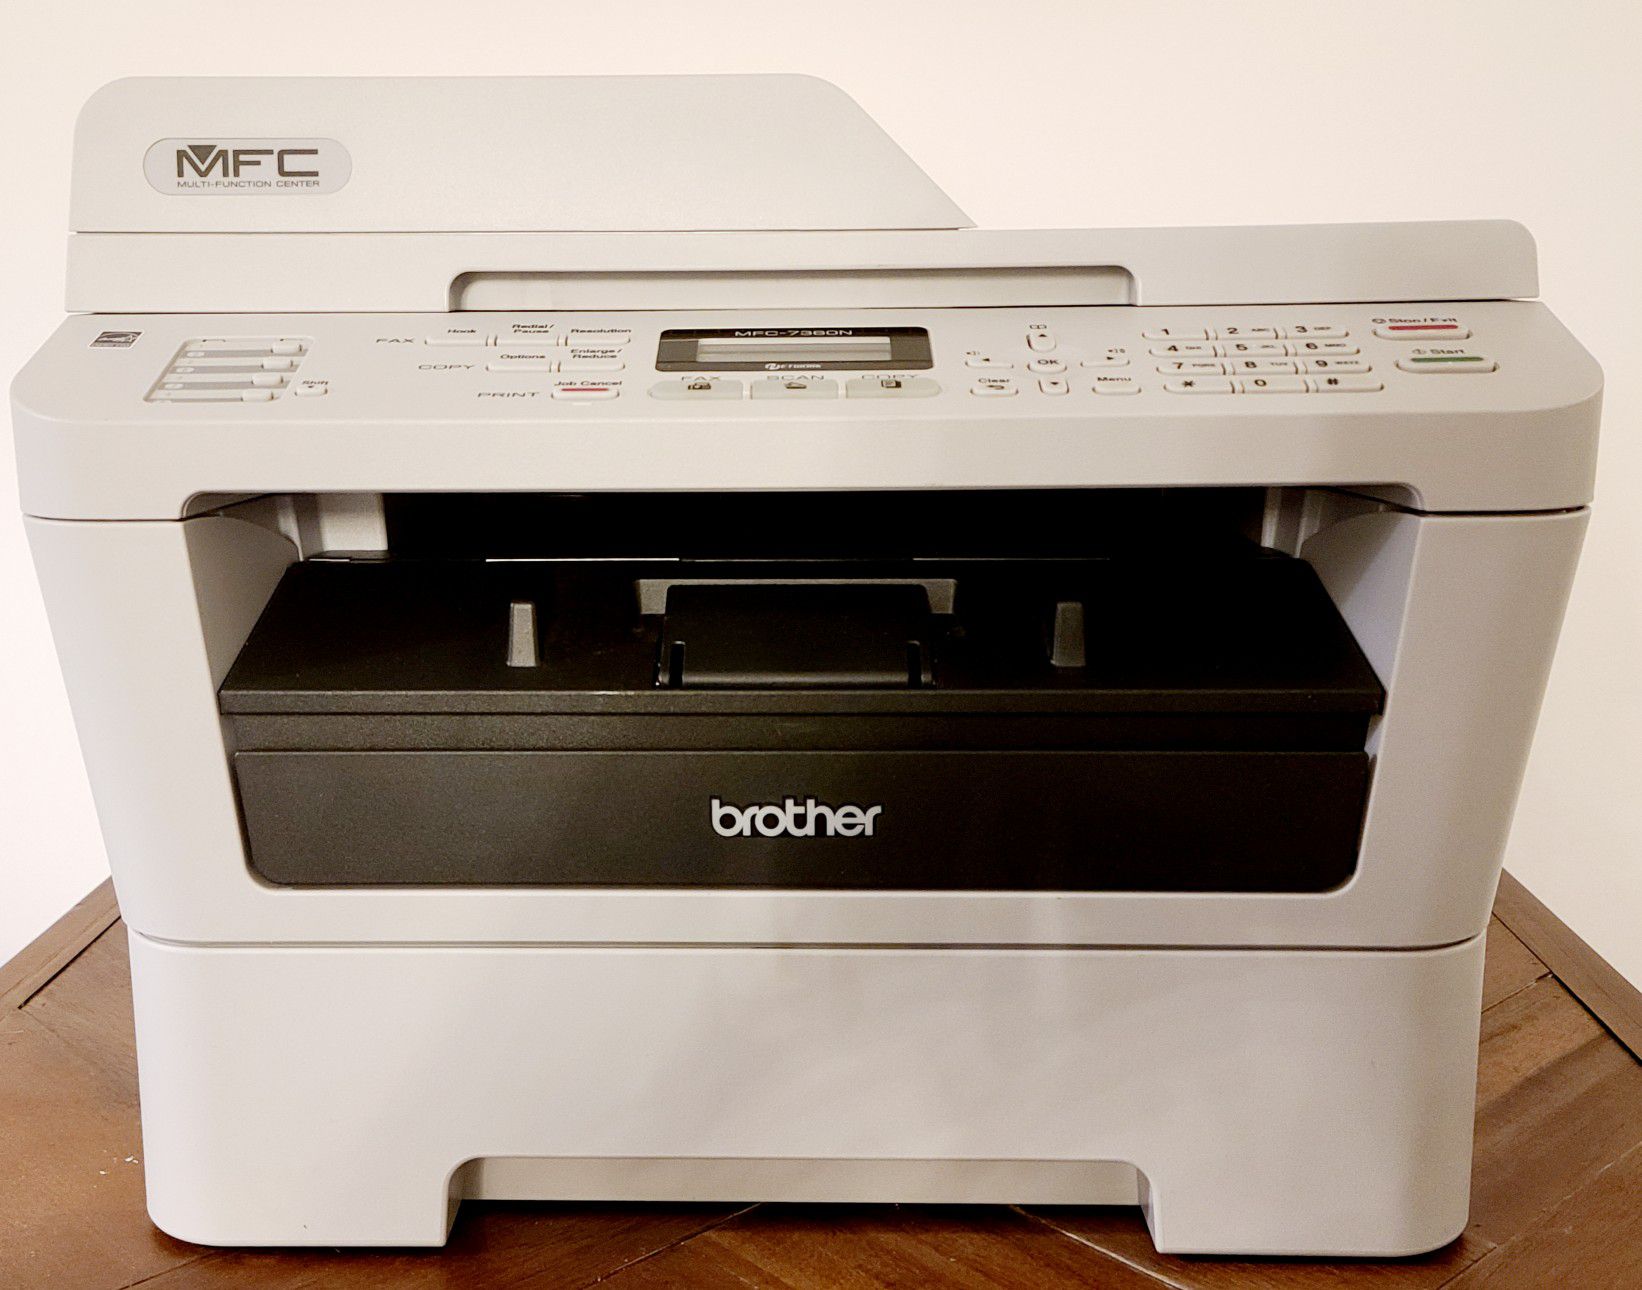 Brother MFC-7360N laser printer/scanner/fax